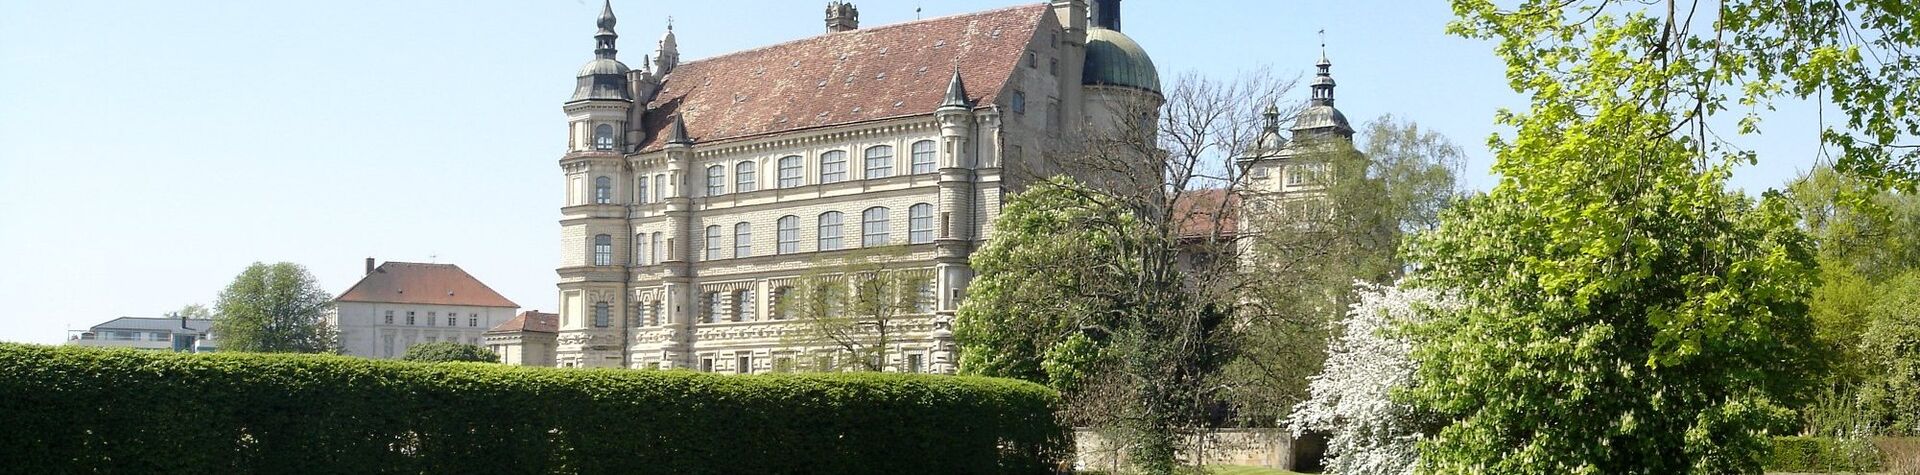 Foto Schloss Güstrow, Mecklenburg-Vorpommern